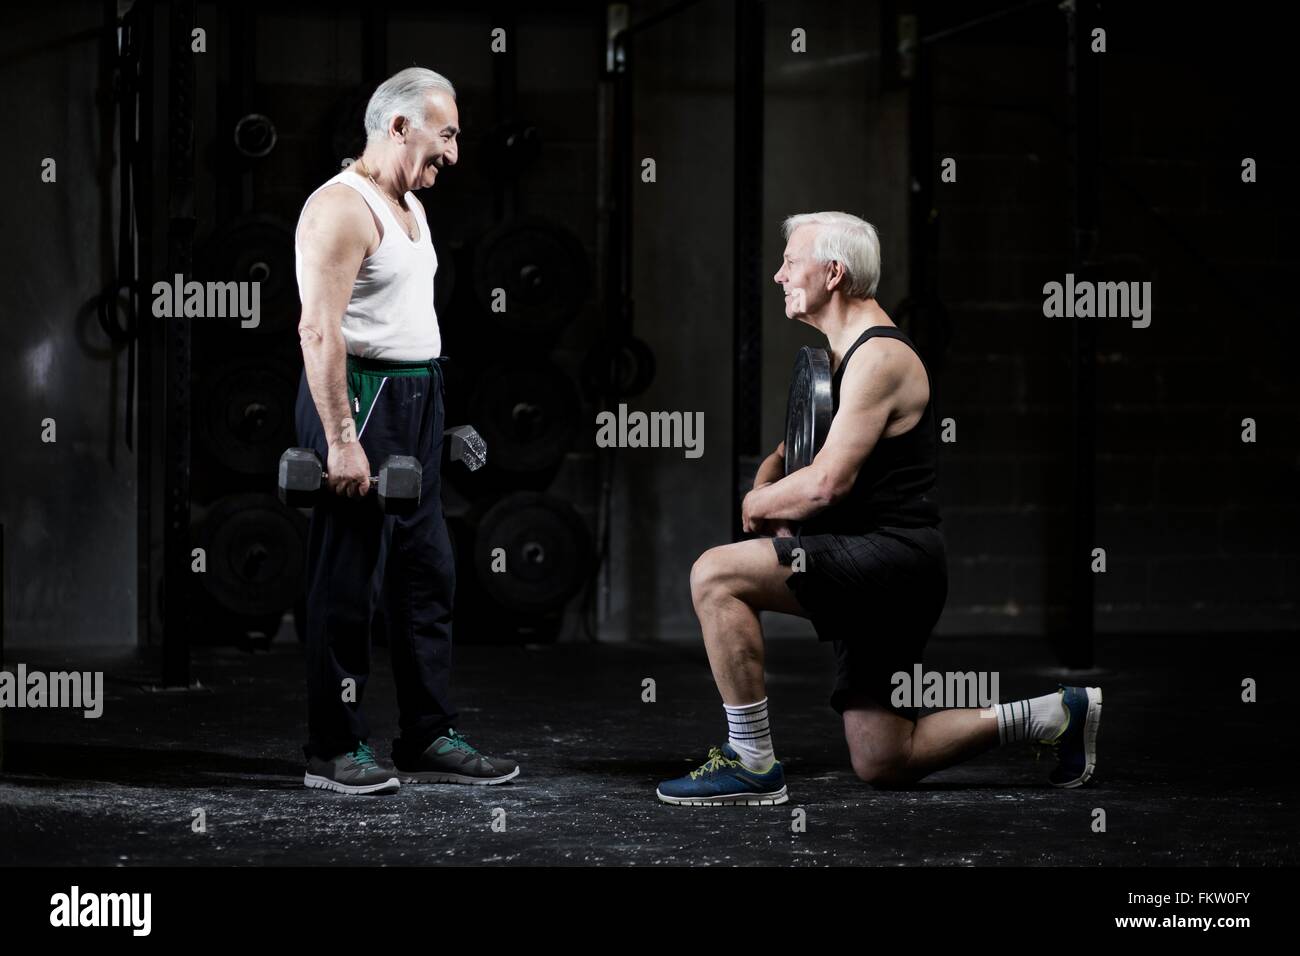 Senior men preparing to weightlift in dark gym Stock Photo